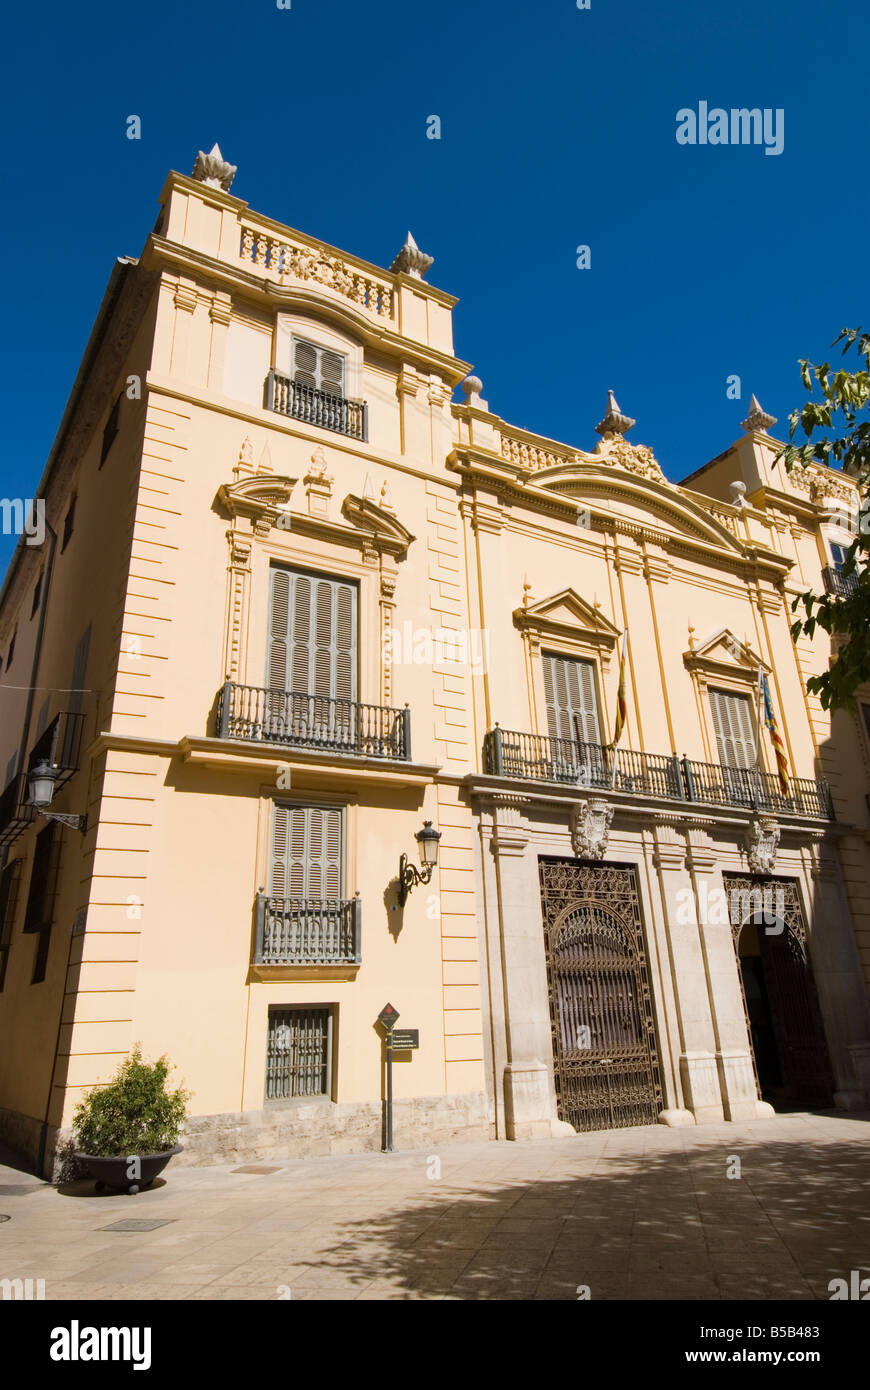 City museum Museo de la Ciudad Palacio del Marques de Campo in the historical city centre of Valencia Spain Stock Photo